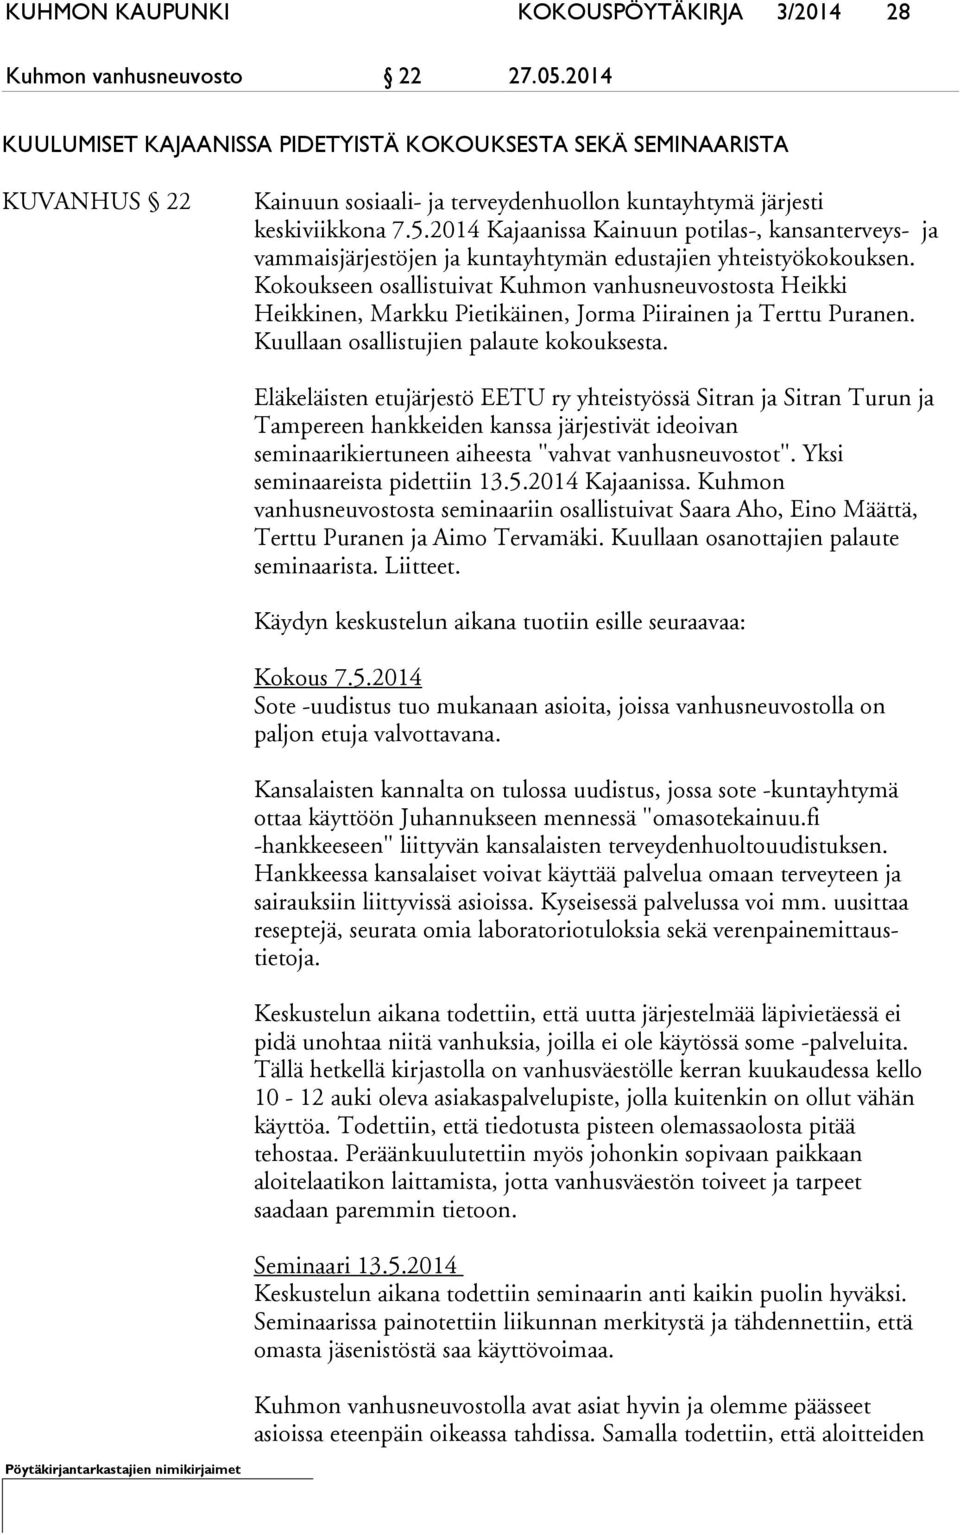 2014 Kajaanissa Kainuun potilas-, kansanterveys- ja vammaisjärjestöjen ja kuntayhtymän edustajien yhteistyökokouksen.